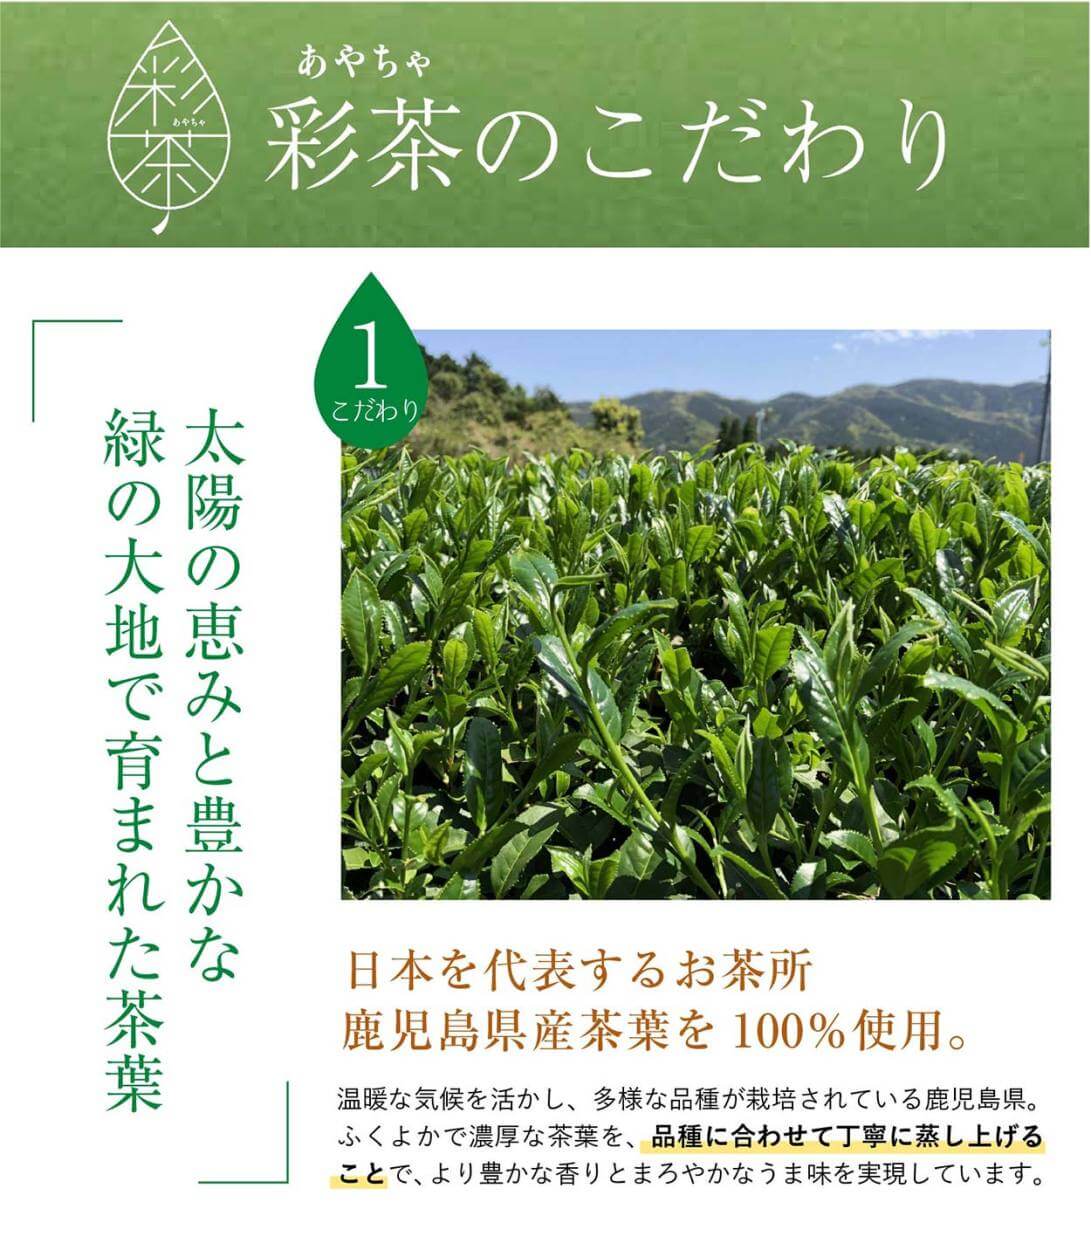 緑茶 彩茶のこだわり①「太陽の恵みと豊かな緑の大地で育まれた茶葉」日本を代表するお茶所 鹿児島県産茶葉を 100% 使用。温暖な気候を活かし、多様な品種が栽培されている鹿児島県。ふくよかで濃厚な茶葉を、品種に合わせて丁寧に蒸し上げることで、より豊かな香りとまろやかなうま味を実現し
ています。